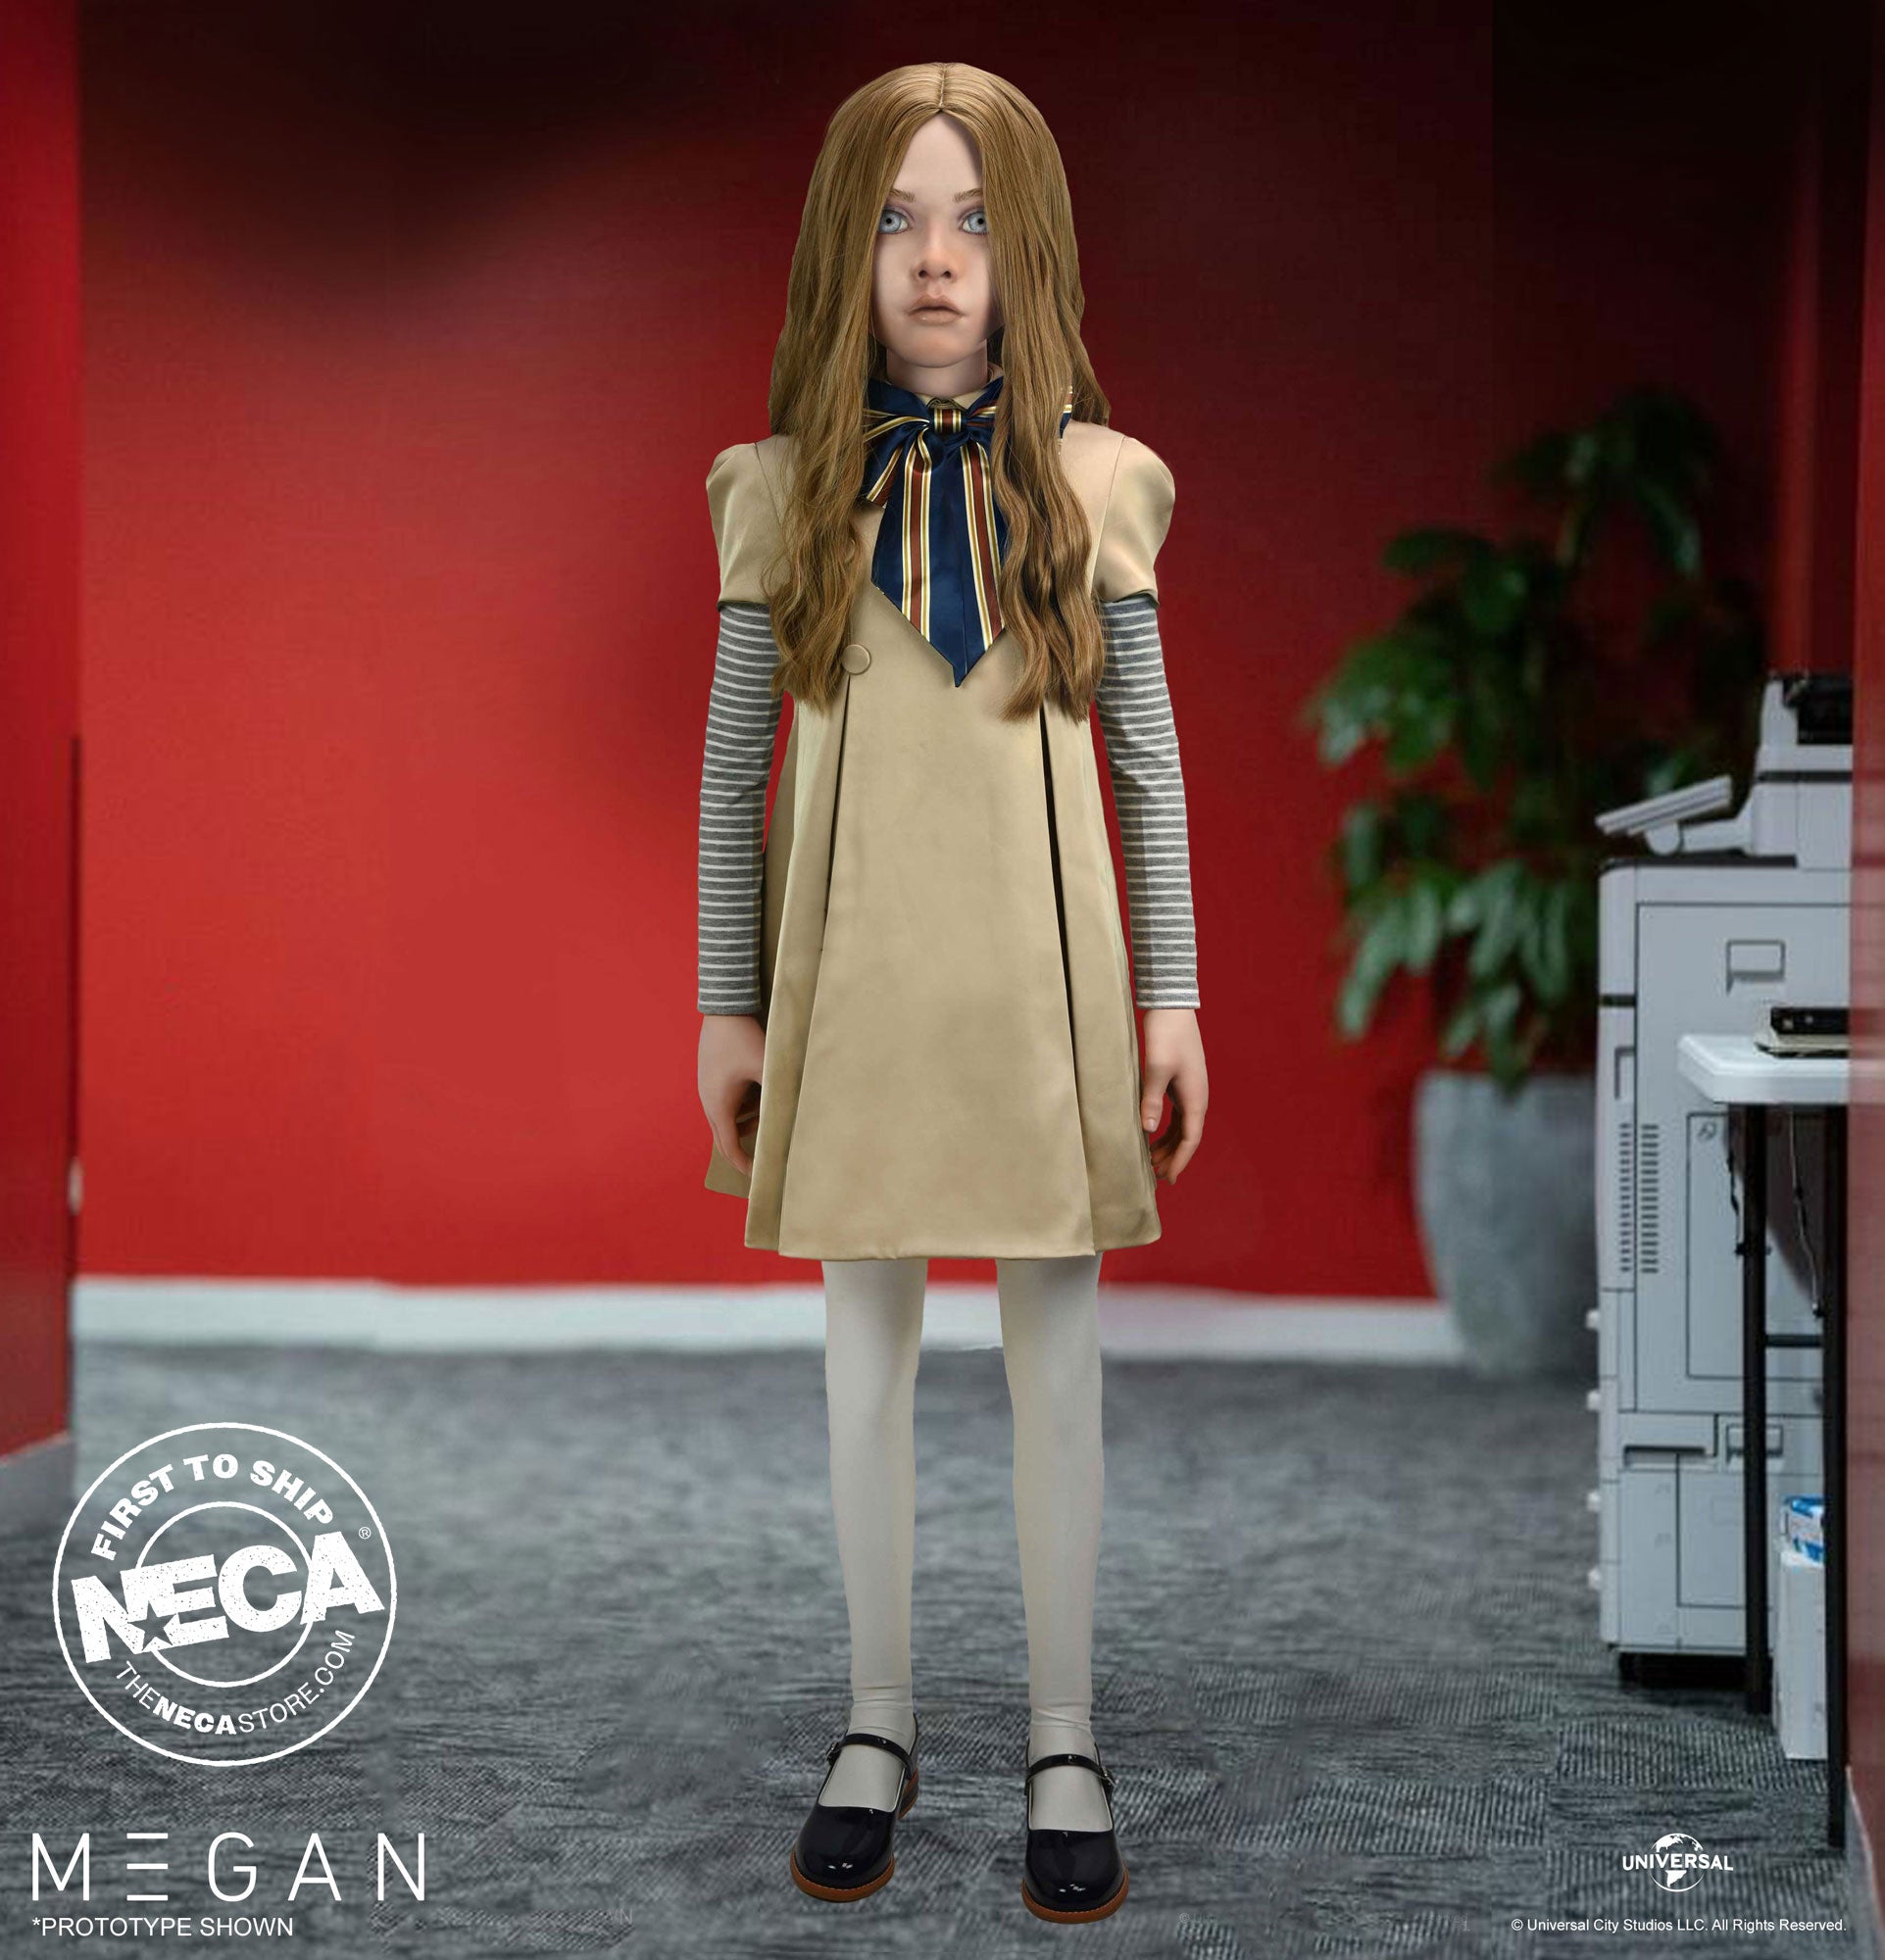 M3GAN Life-Size Replica Doll in hallway. 